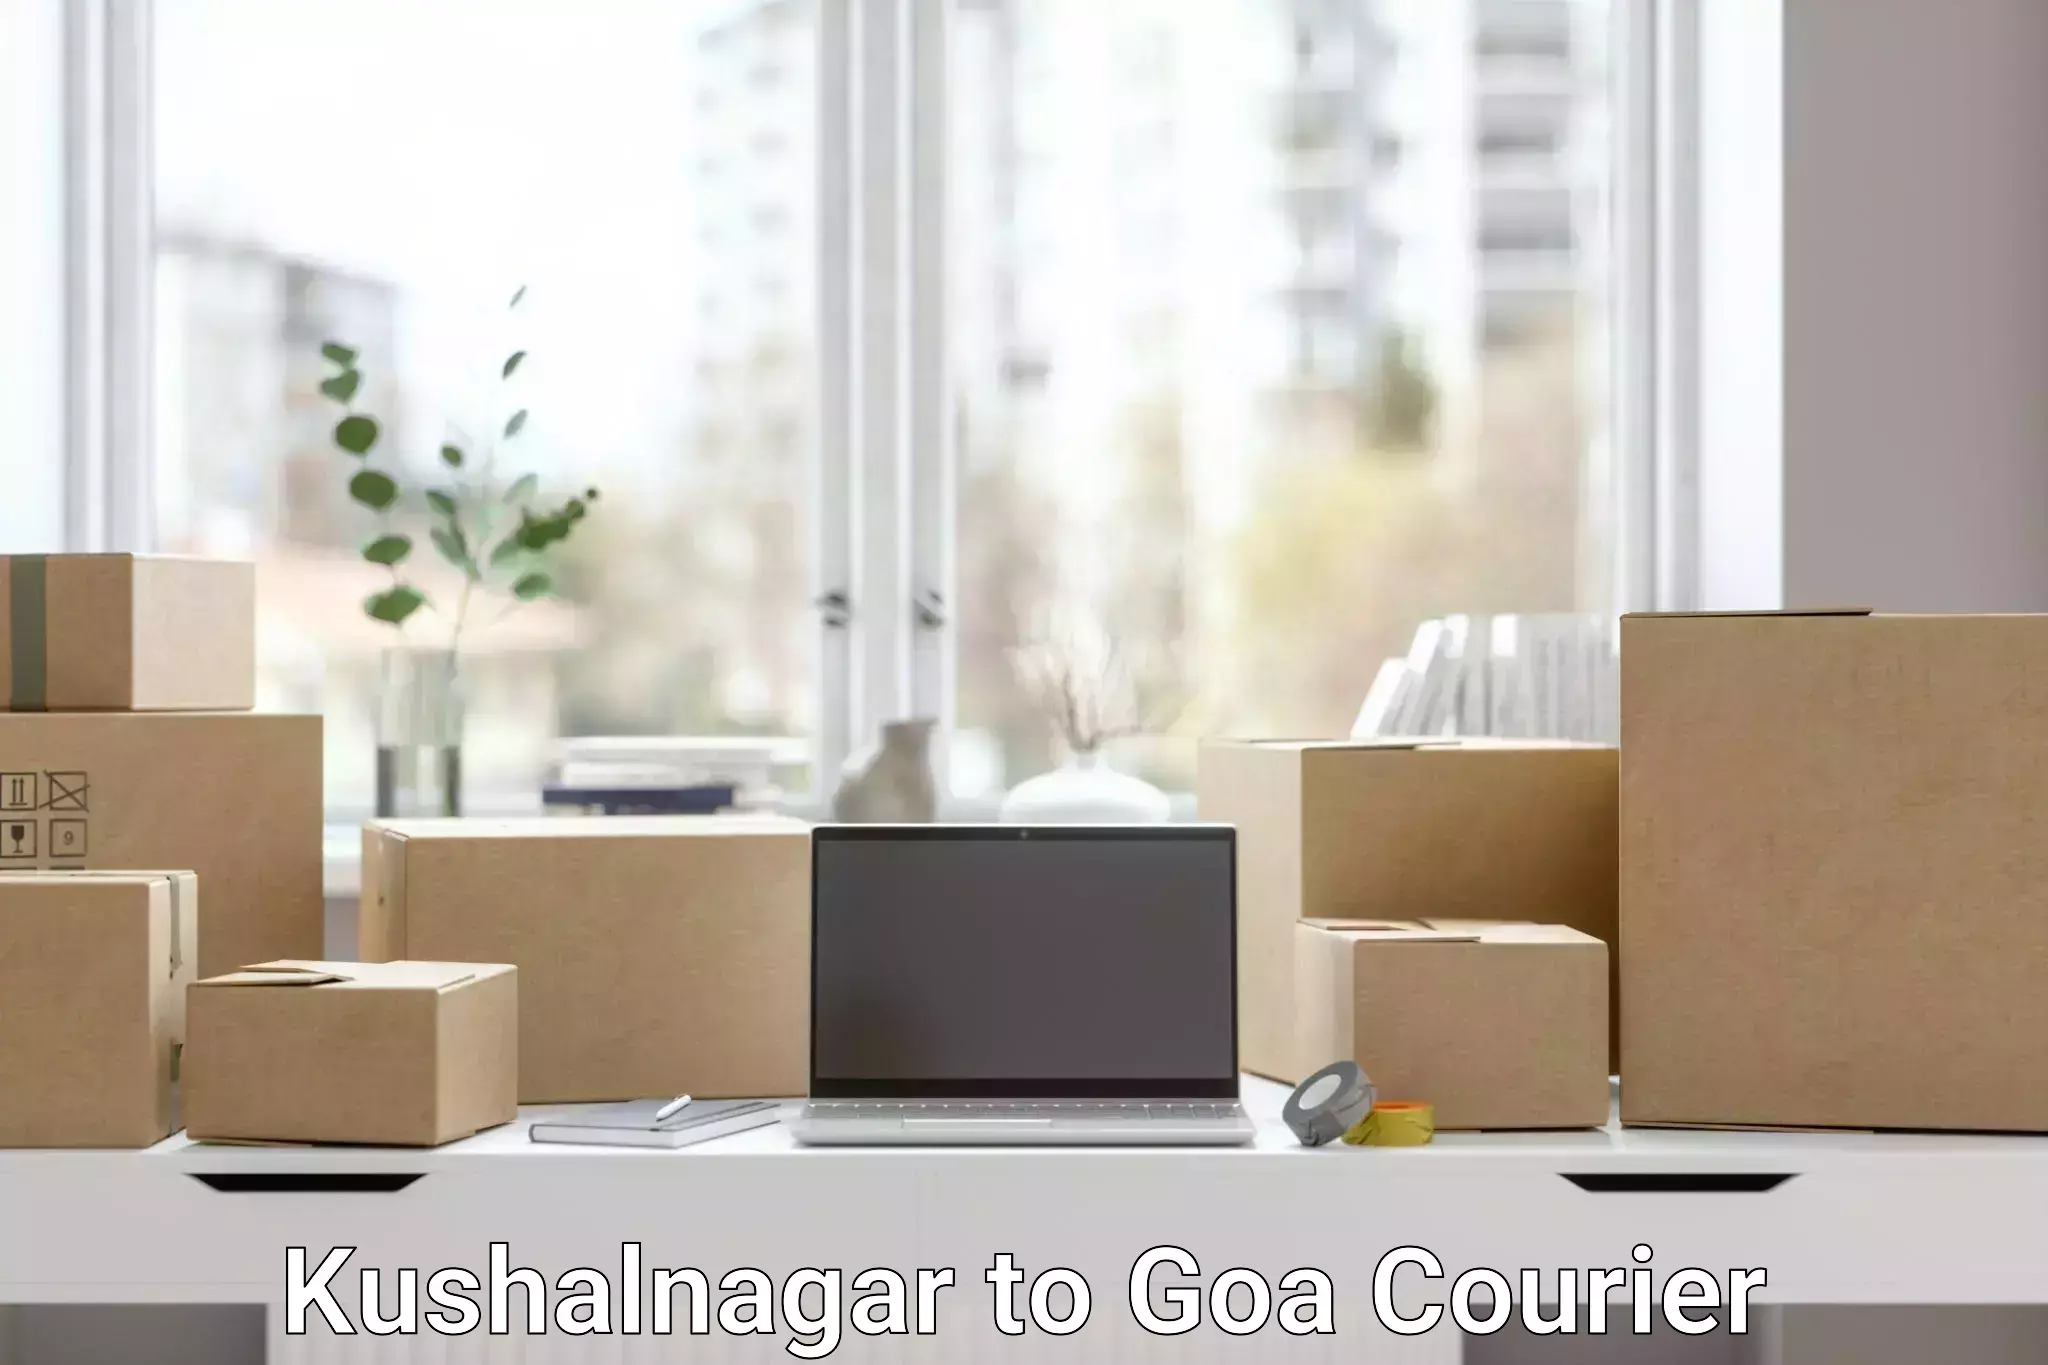 Customer-centric shipping Kushalnagar to Goa